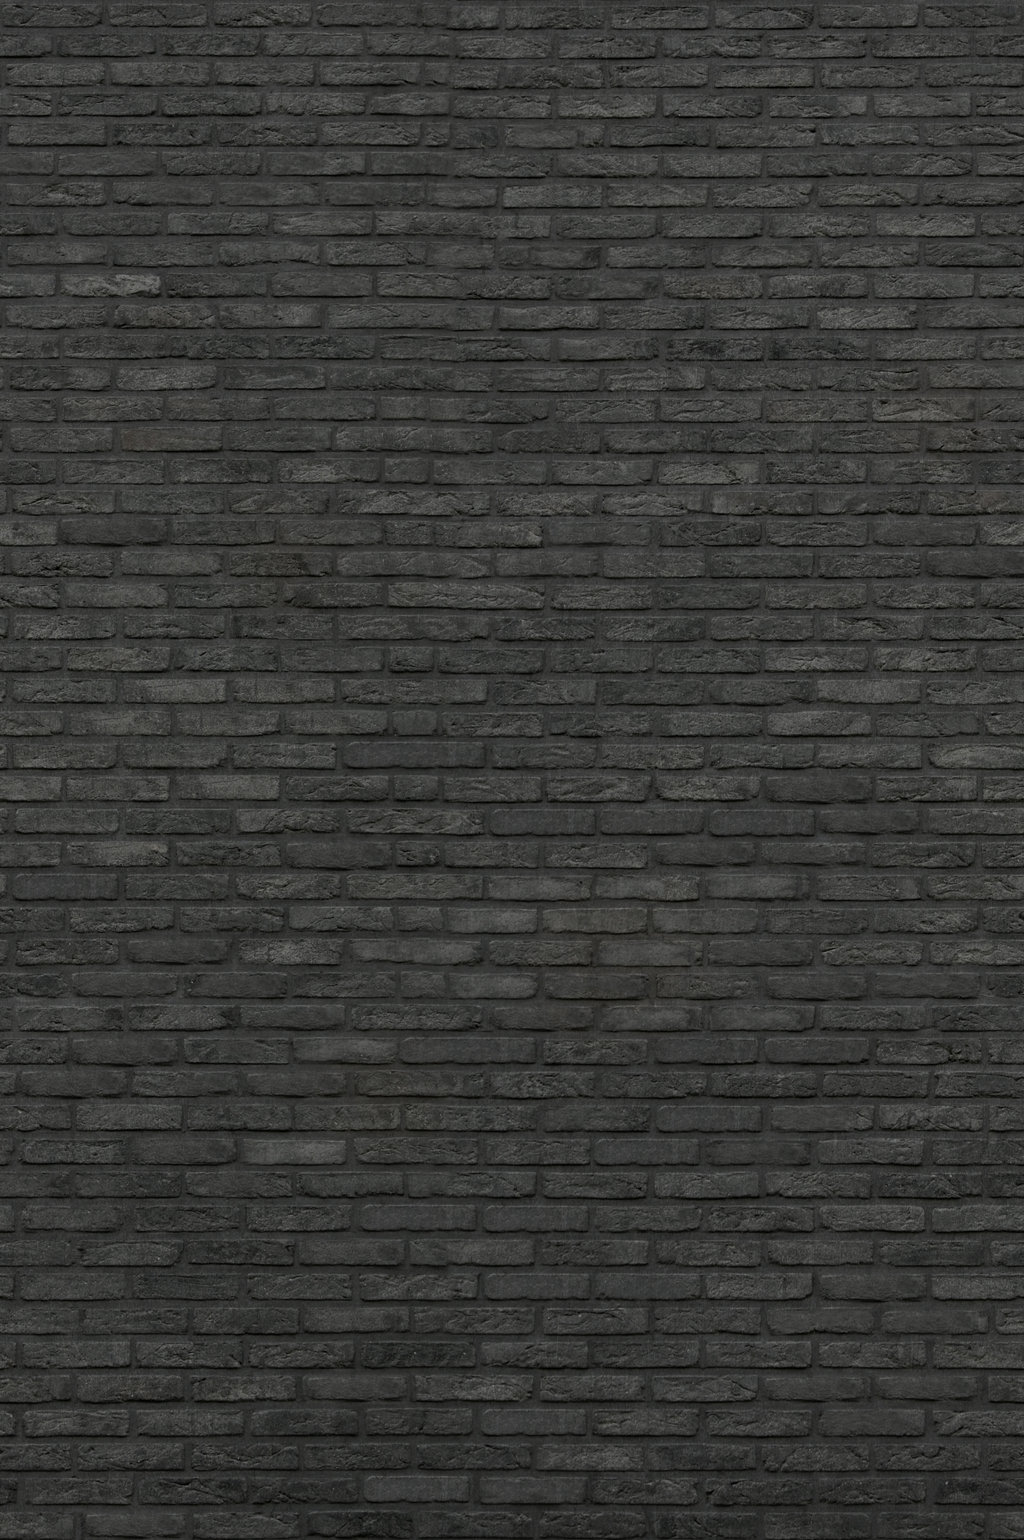 Black Brick Grasscloth Wallpaper